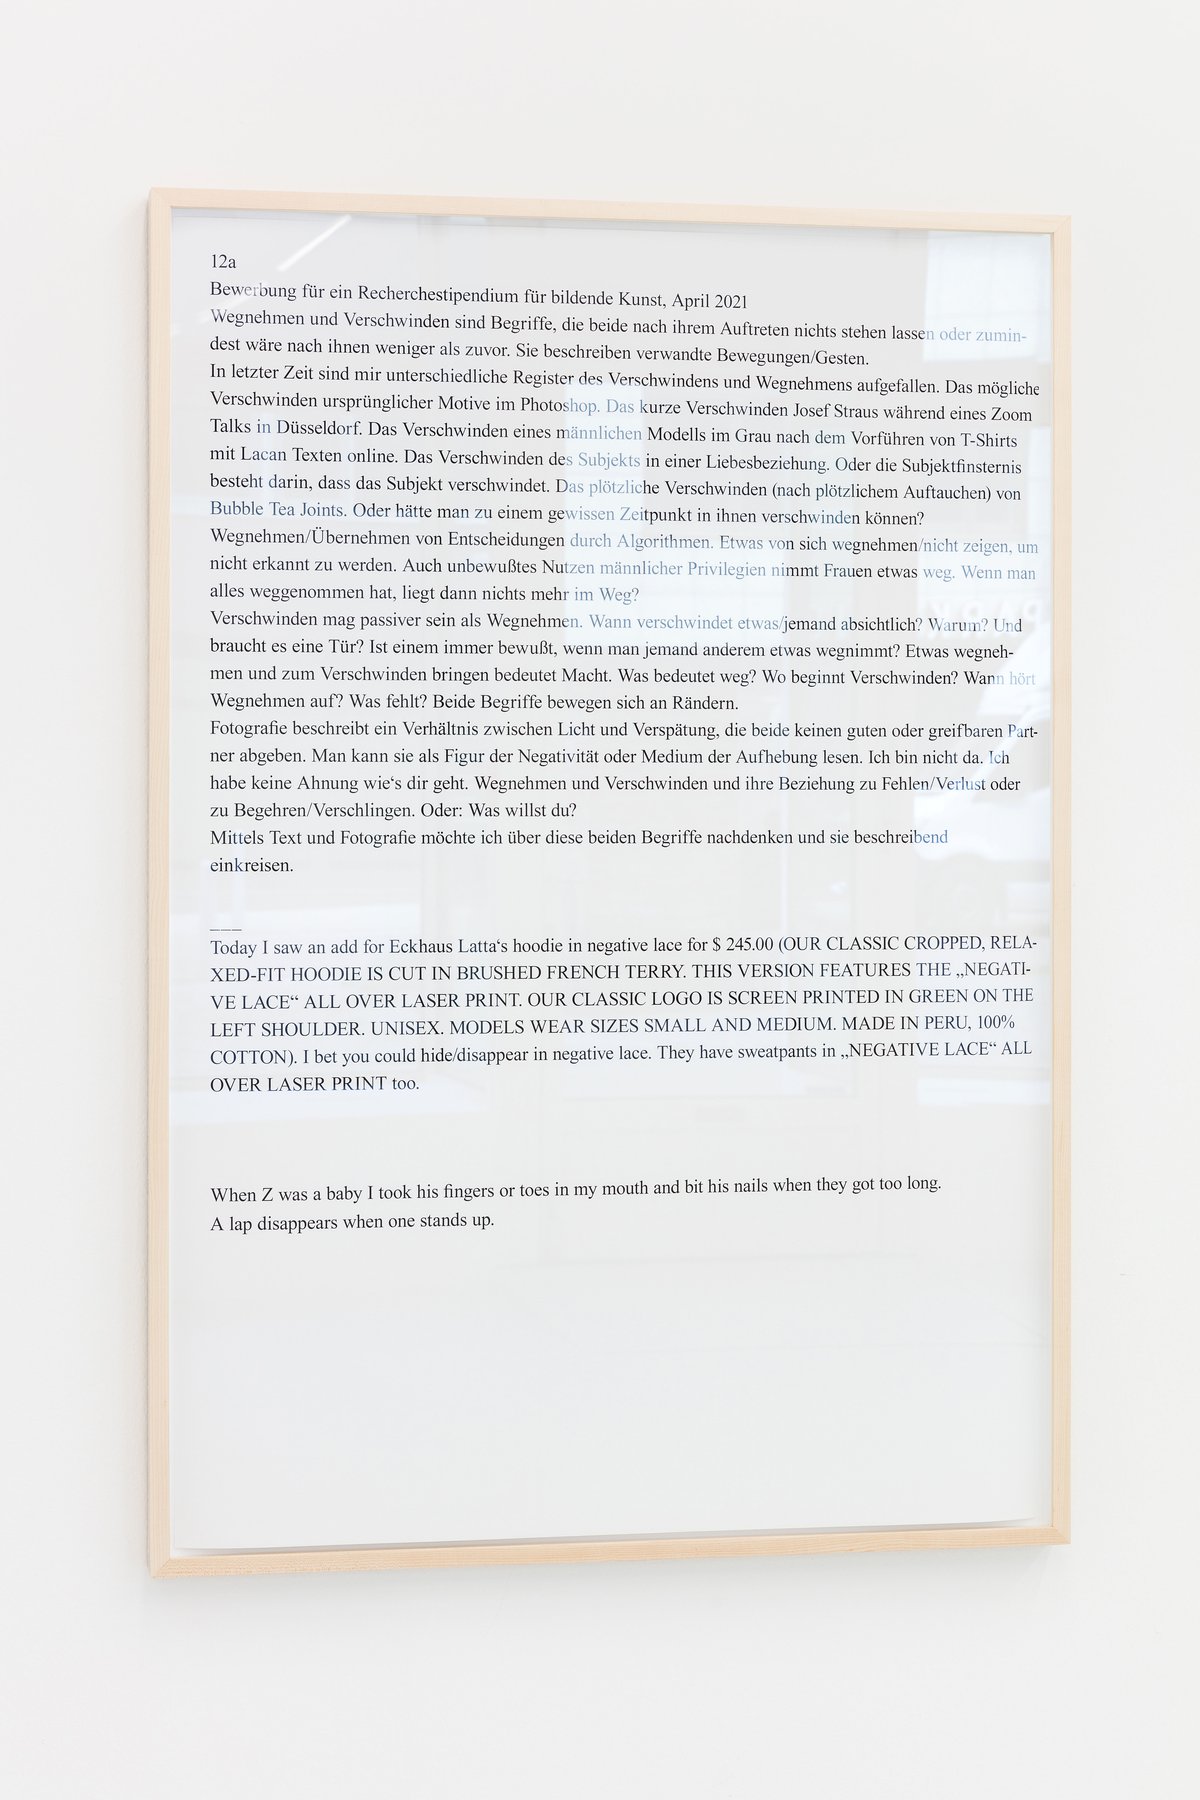 Lisa HolzerBewerbung für ein Recherchestipendium für bildende Kunst, April 2021, 2021Pigment print on cotton paper, black marker on wood110.3 × 76 cm